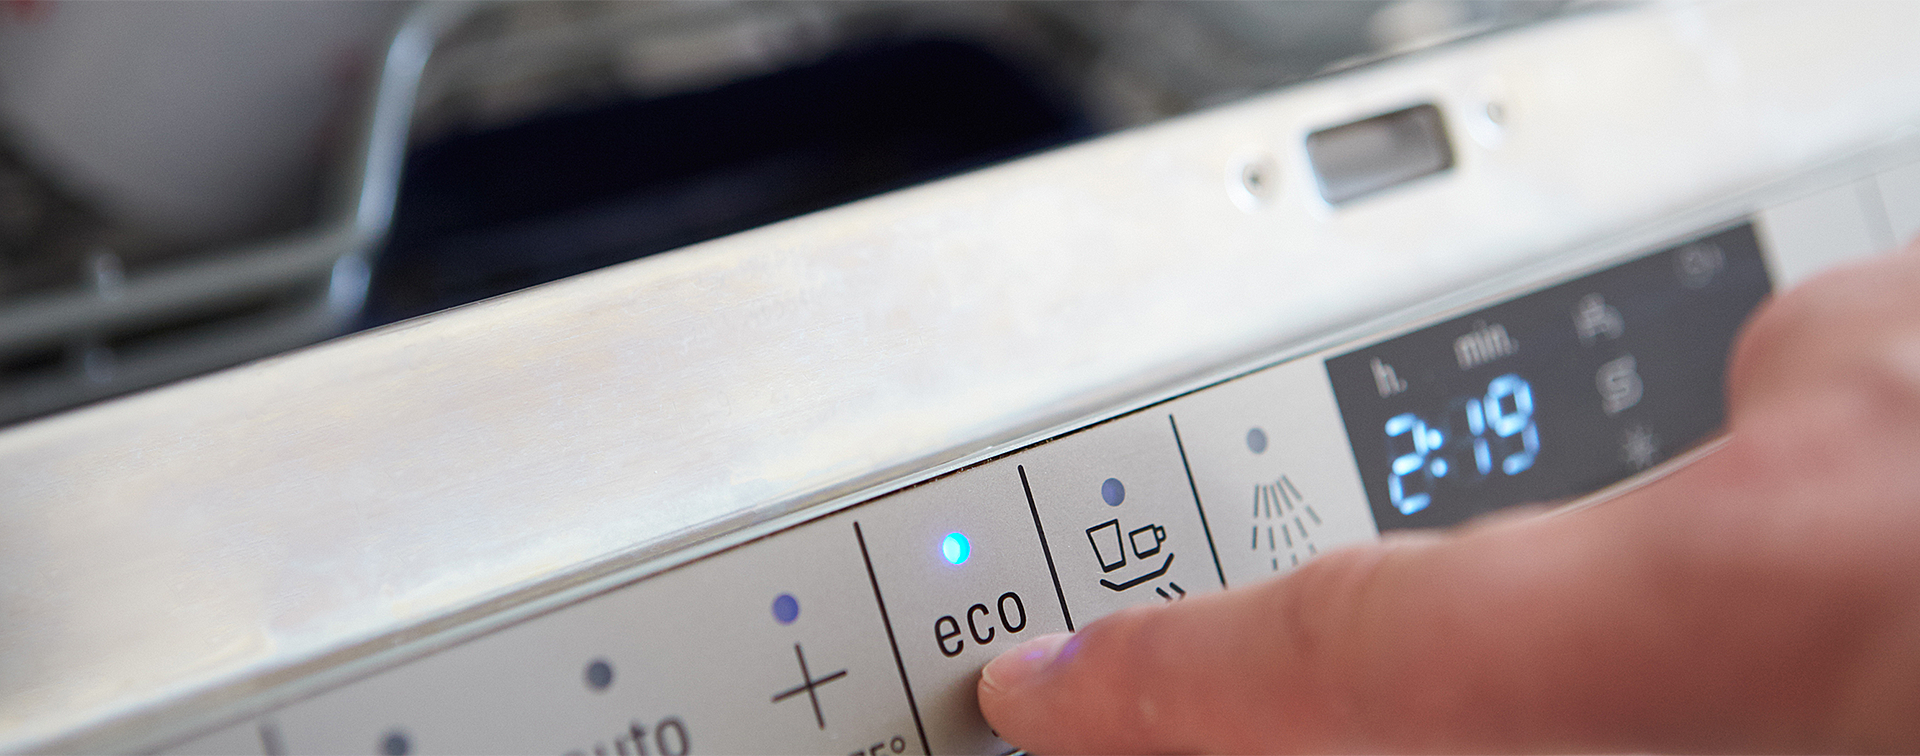 Снежинка на посудомойке. Сколько электричества потребляет посудомойка Beko ds25. Программа эко в посудомоечной машине.